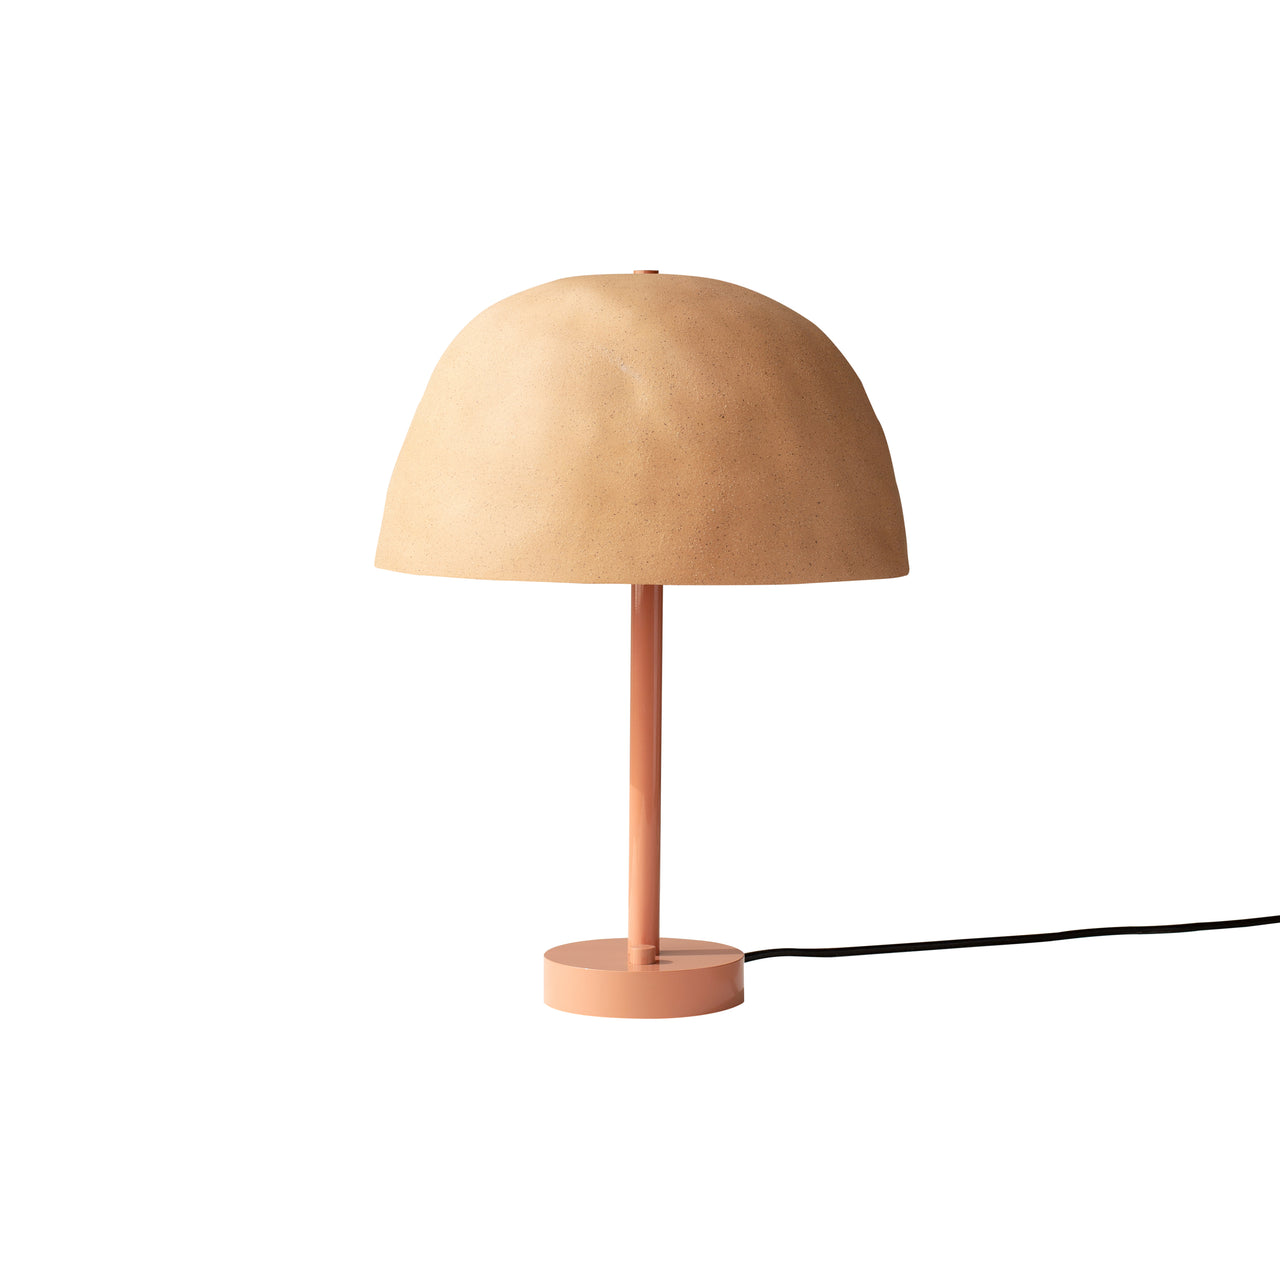 Dome Table Lamp: Tan Clay + Peach